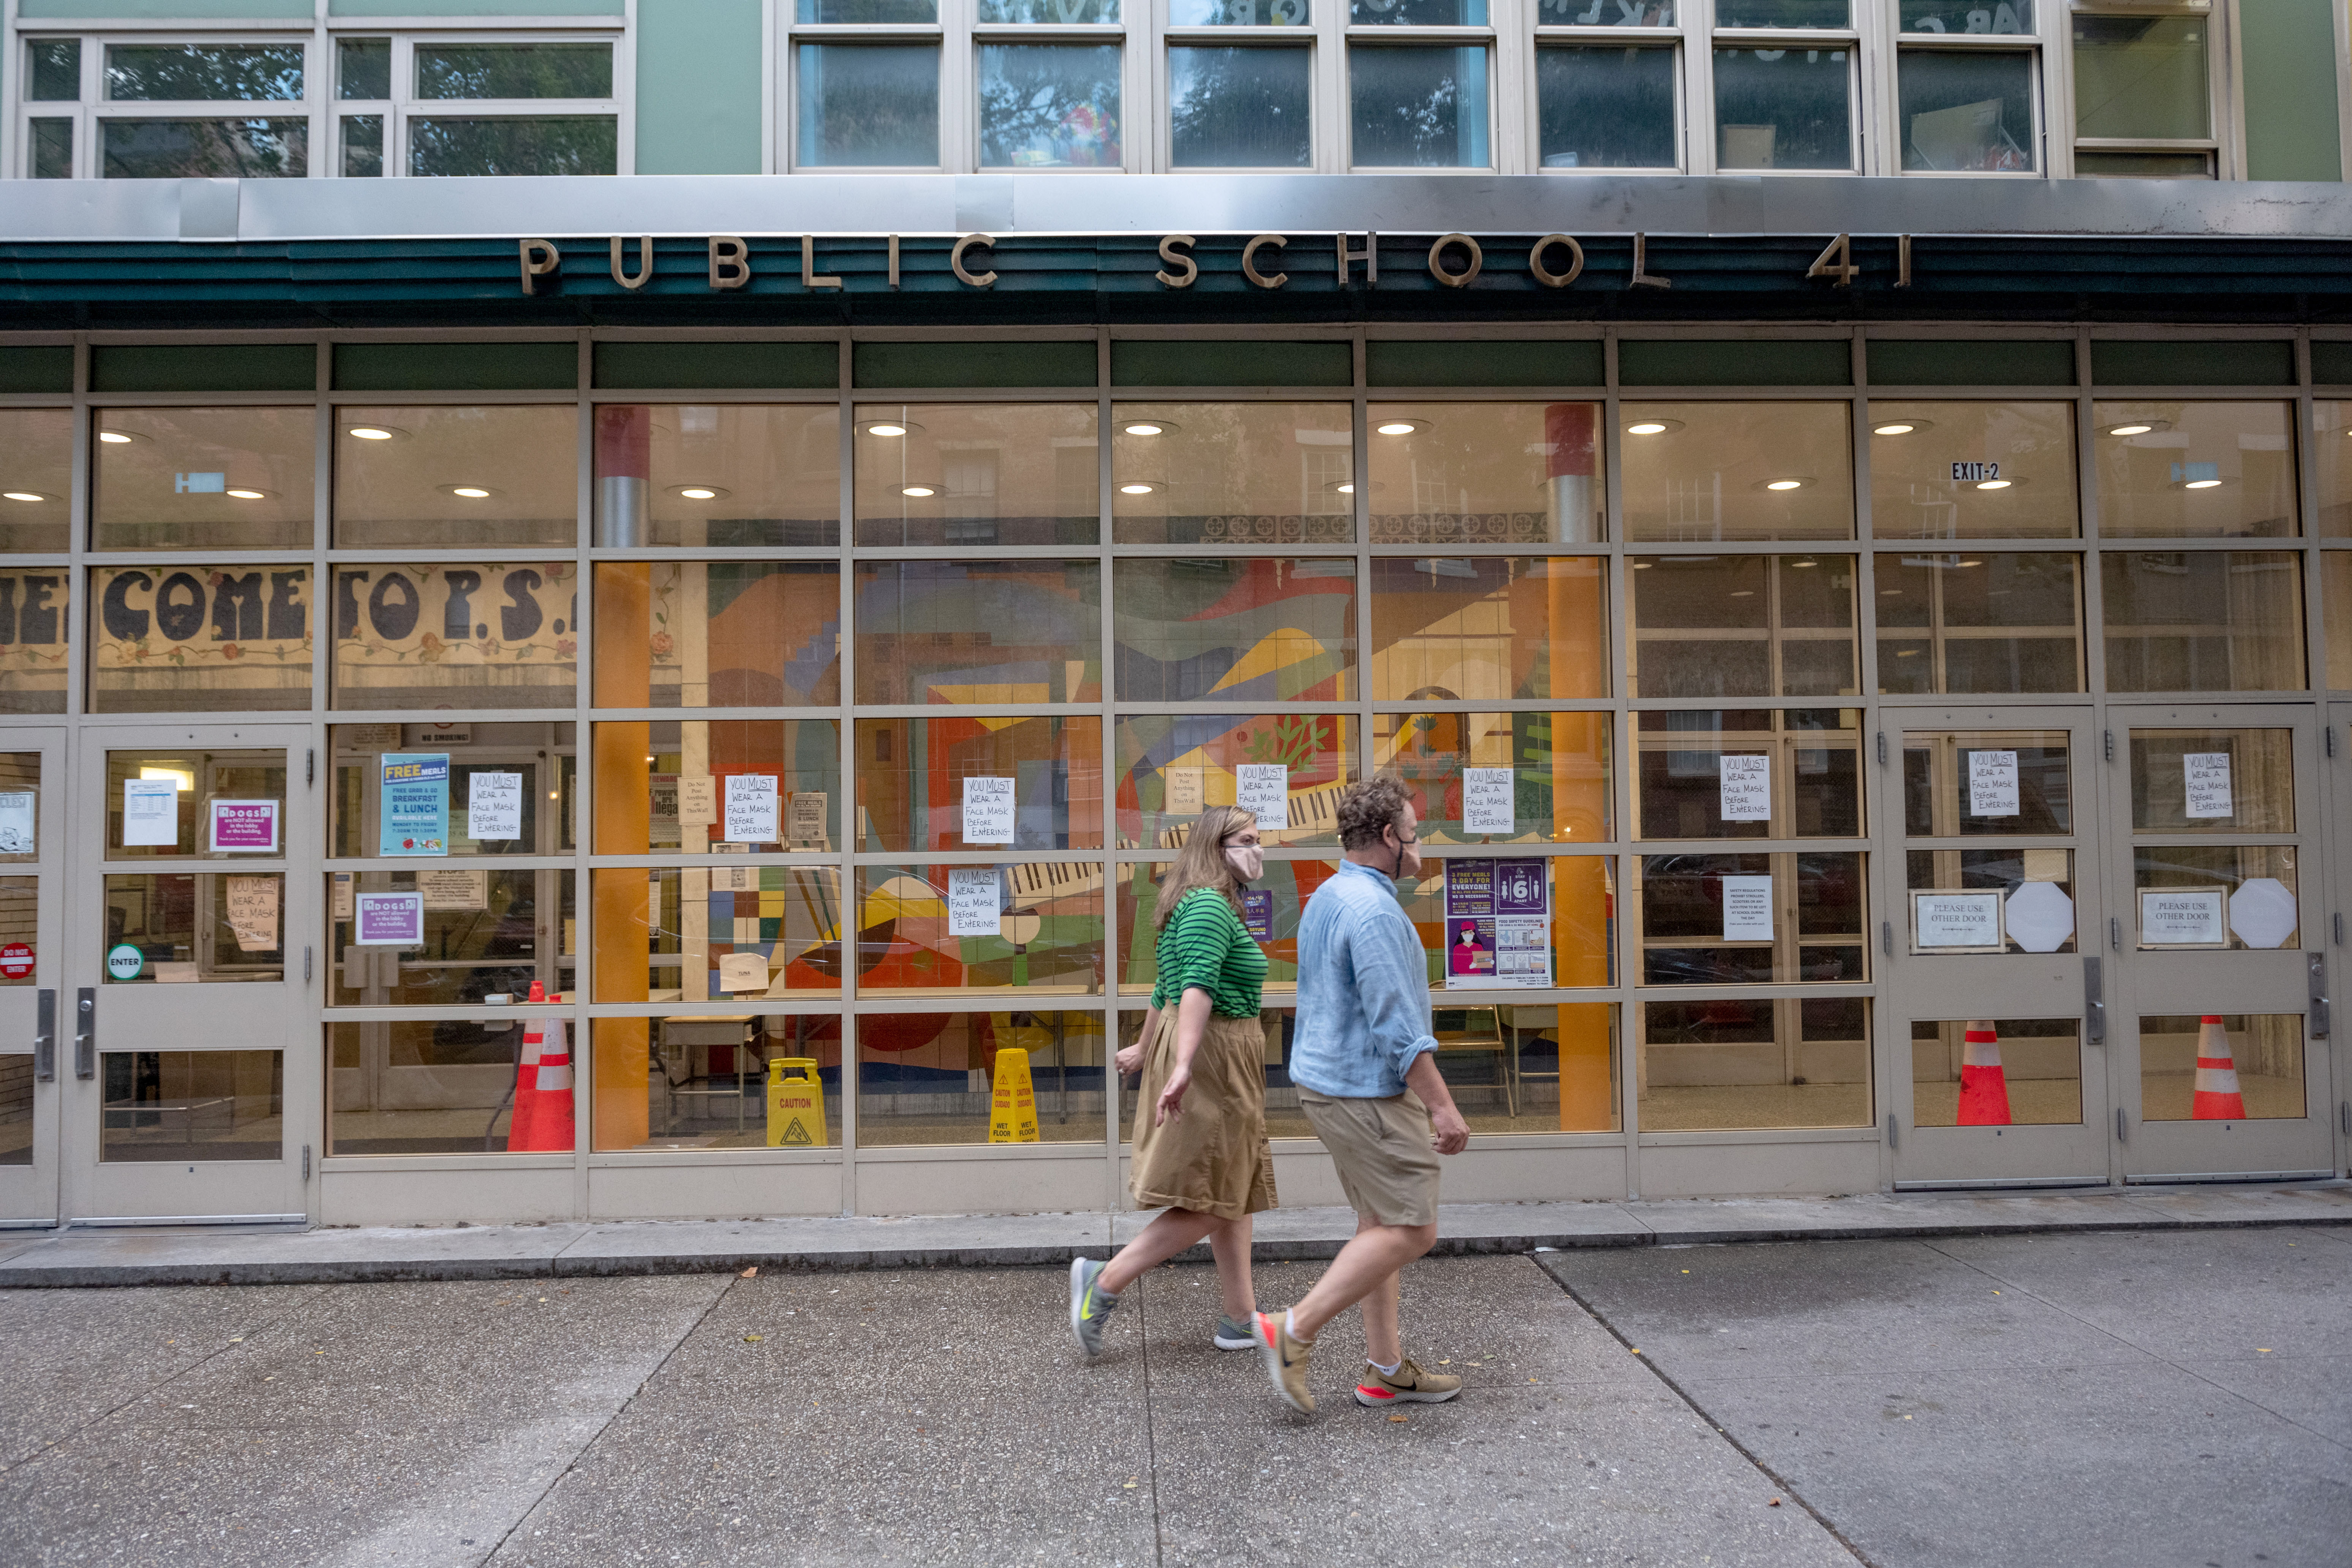 People walk past a public school in New York on July 8.